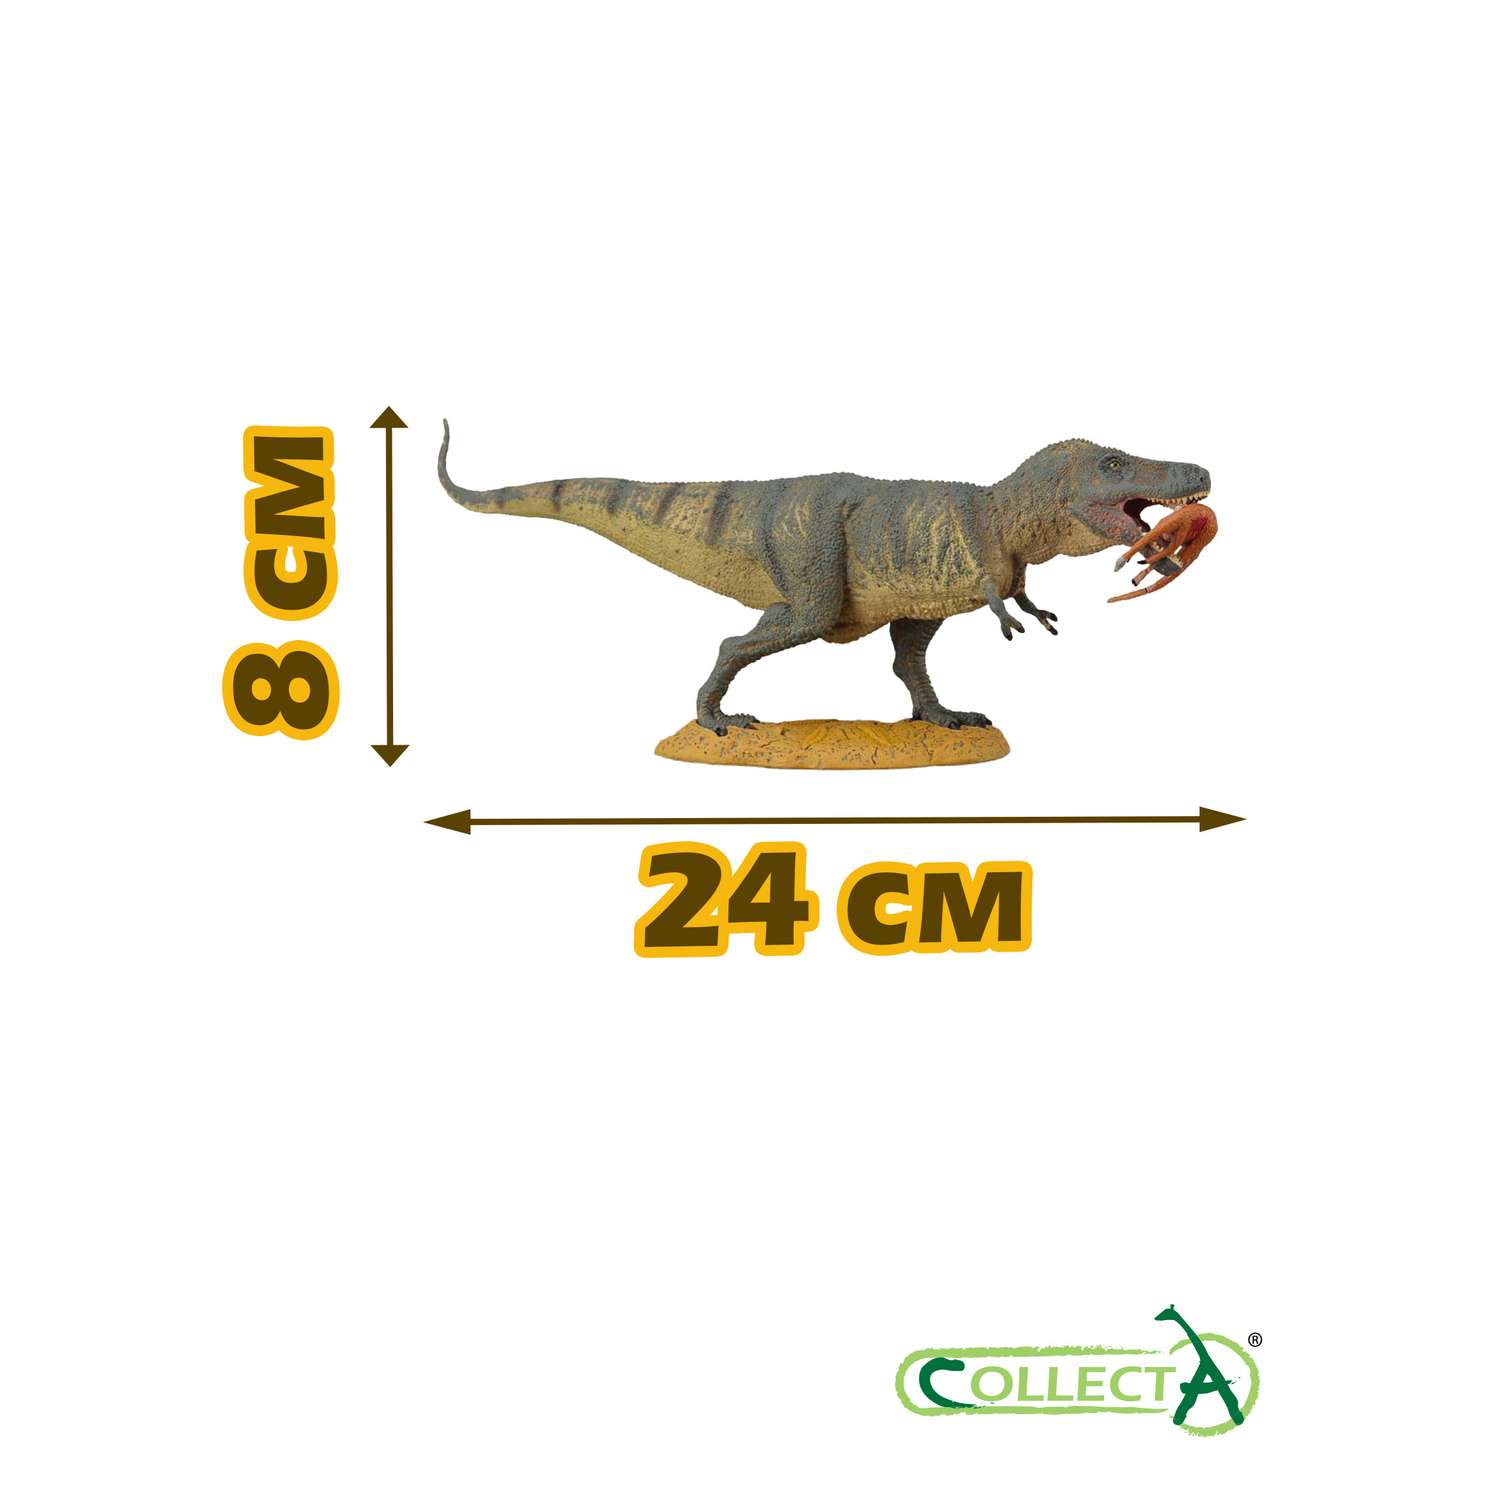 Игрушка Collecta Тиранозавр Рекс с добычей фигурка динозавра - фото 2